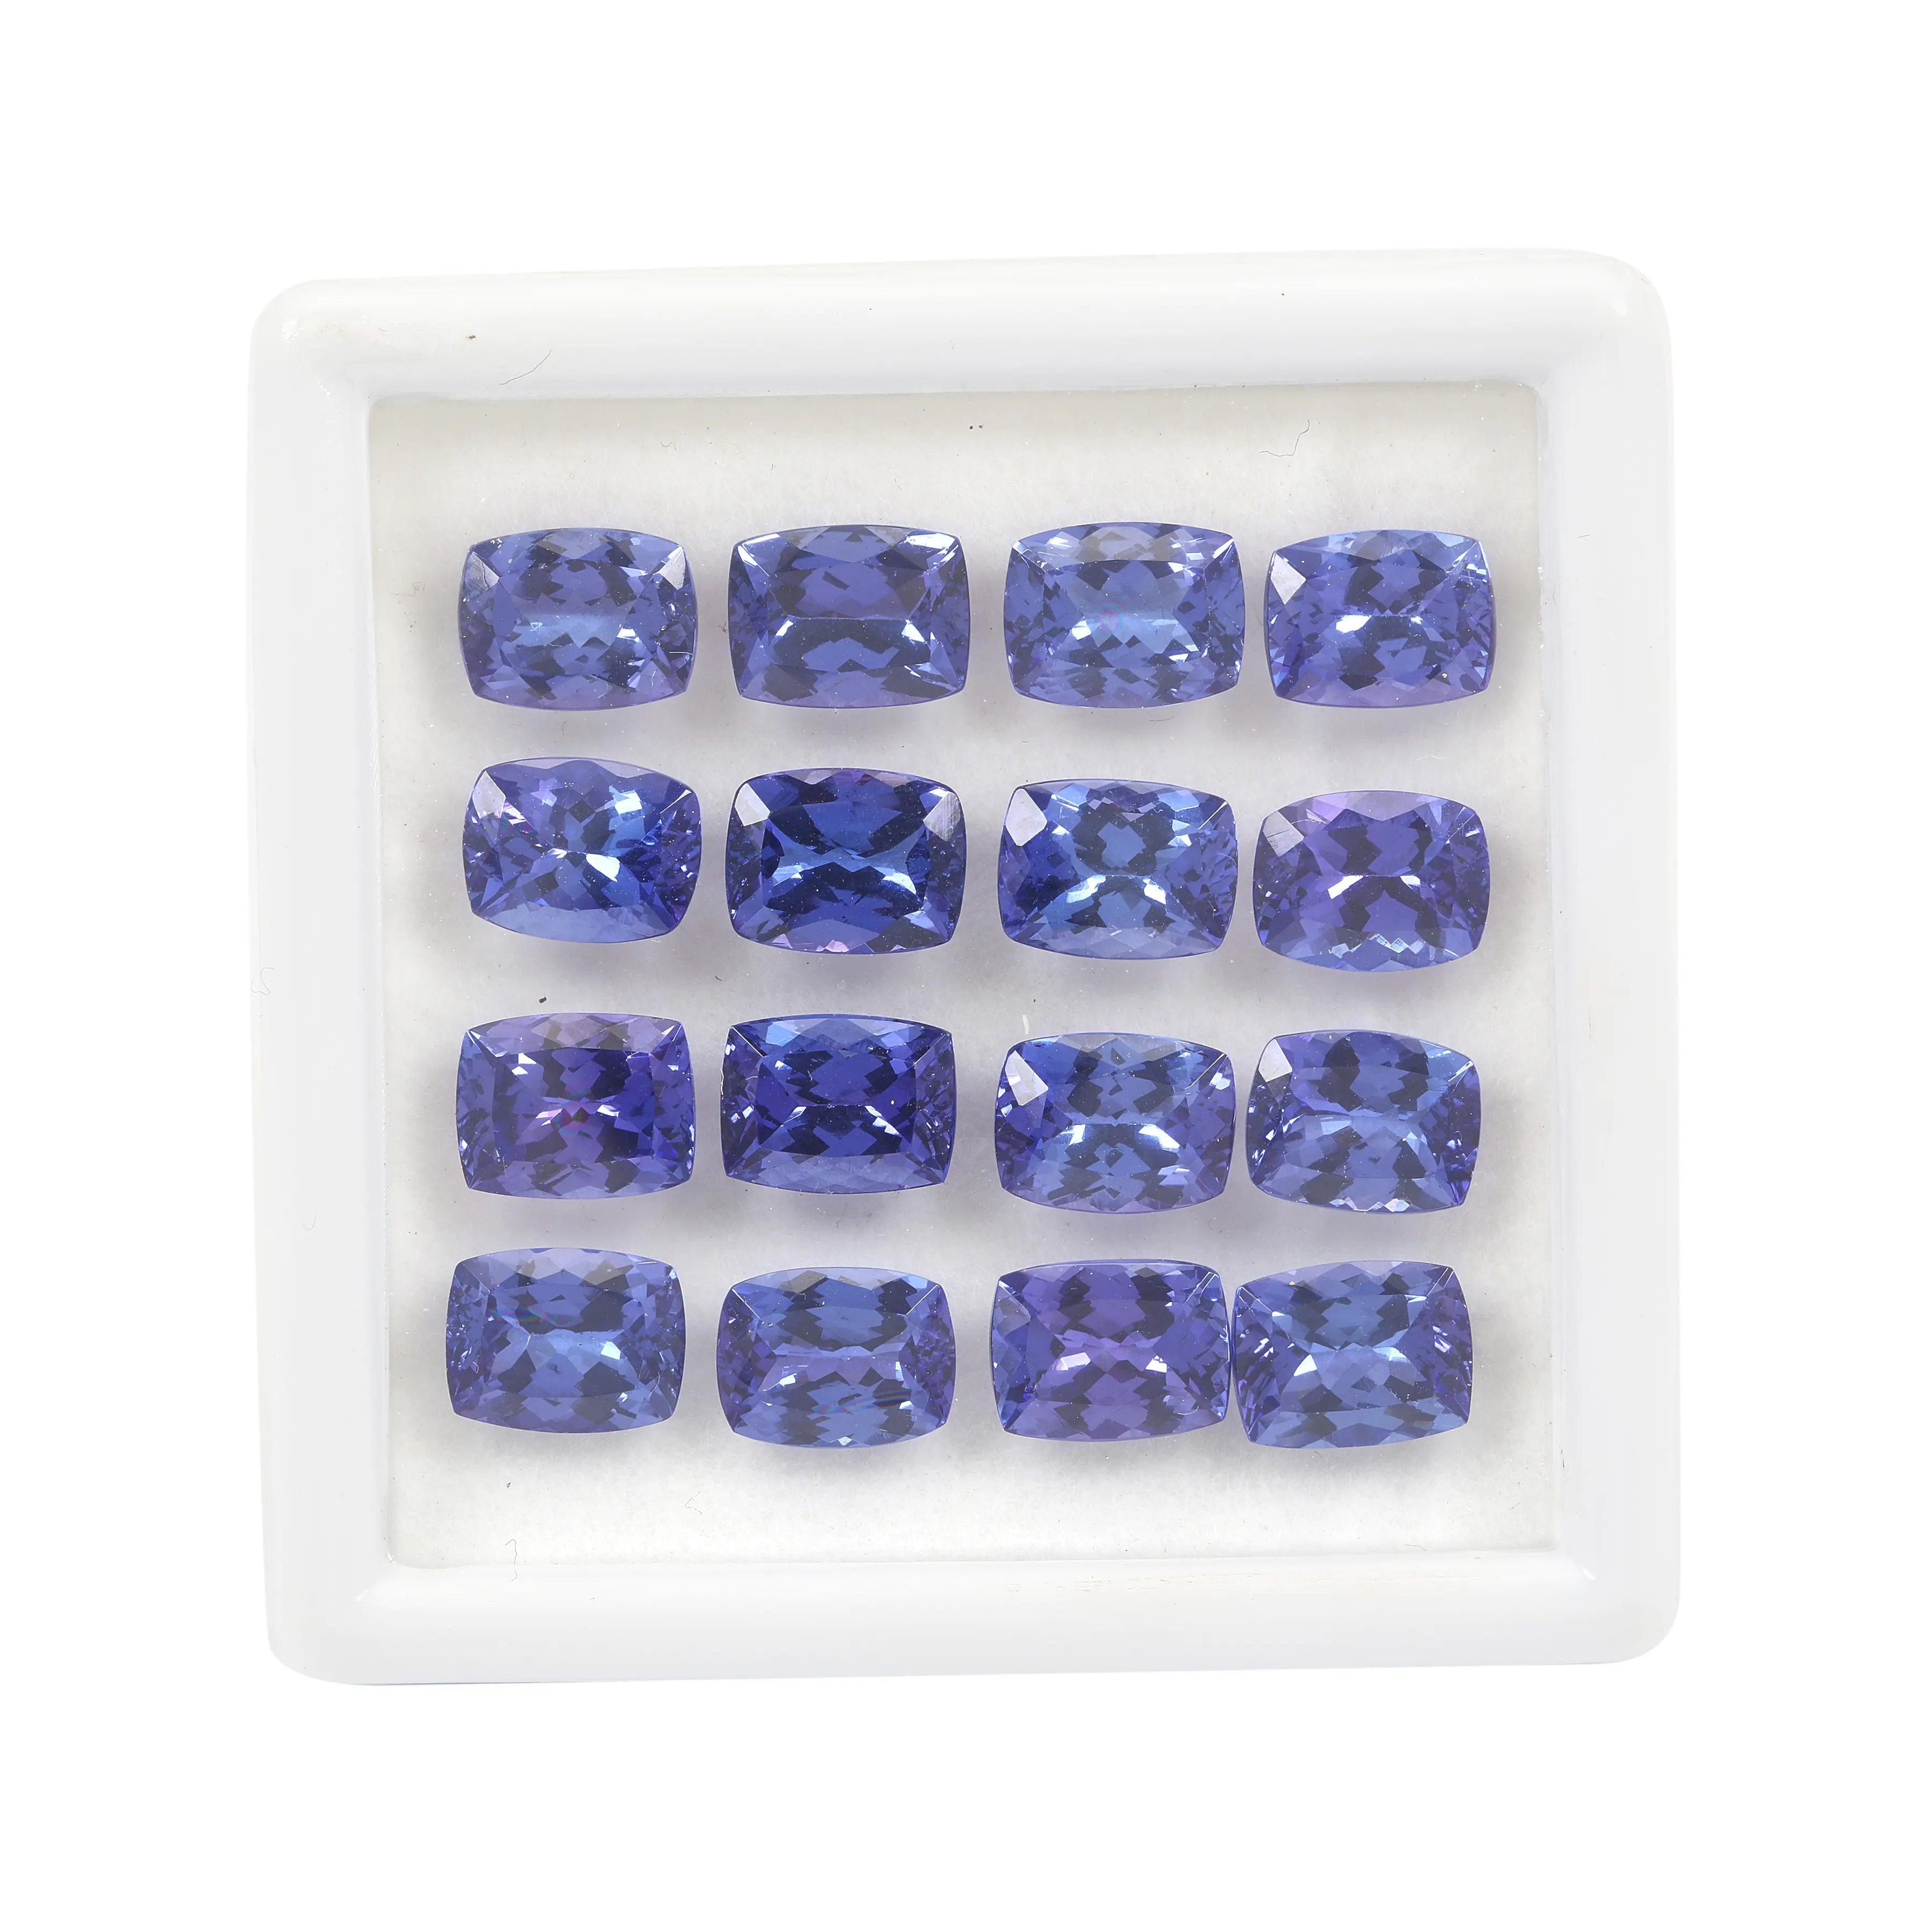 Aaa + almofada tanzanita certificada, qualidade genuína natural azul solta pedra preciosa para fabricação de jóias